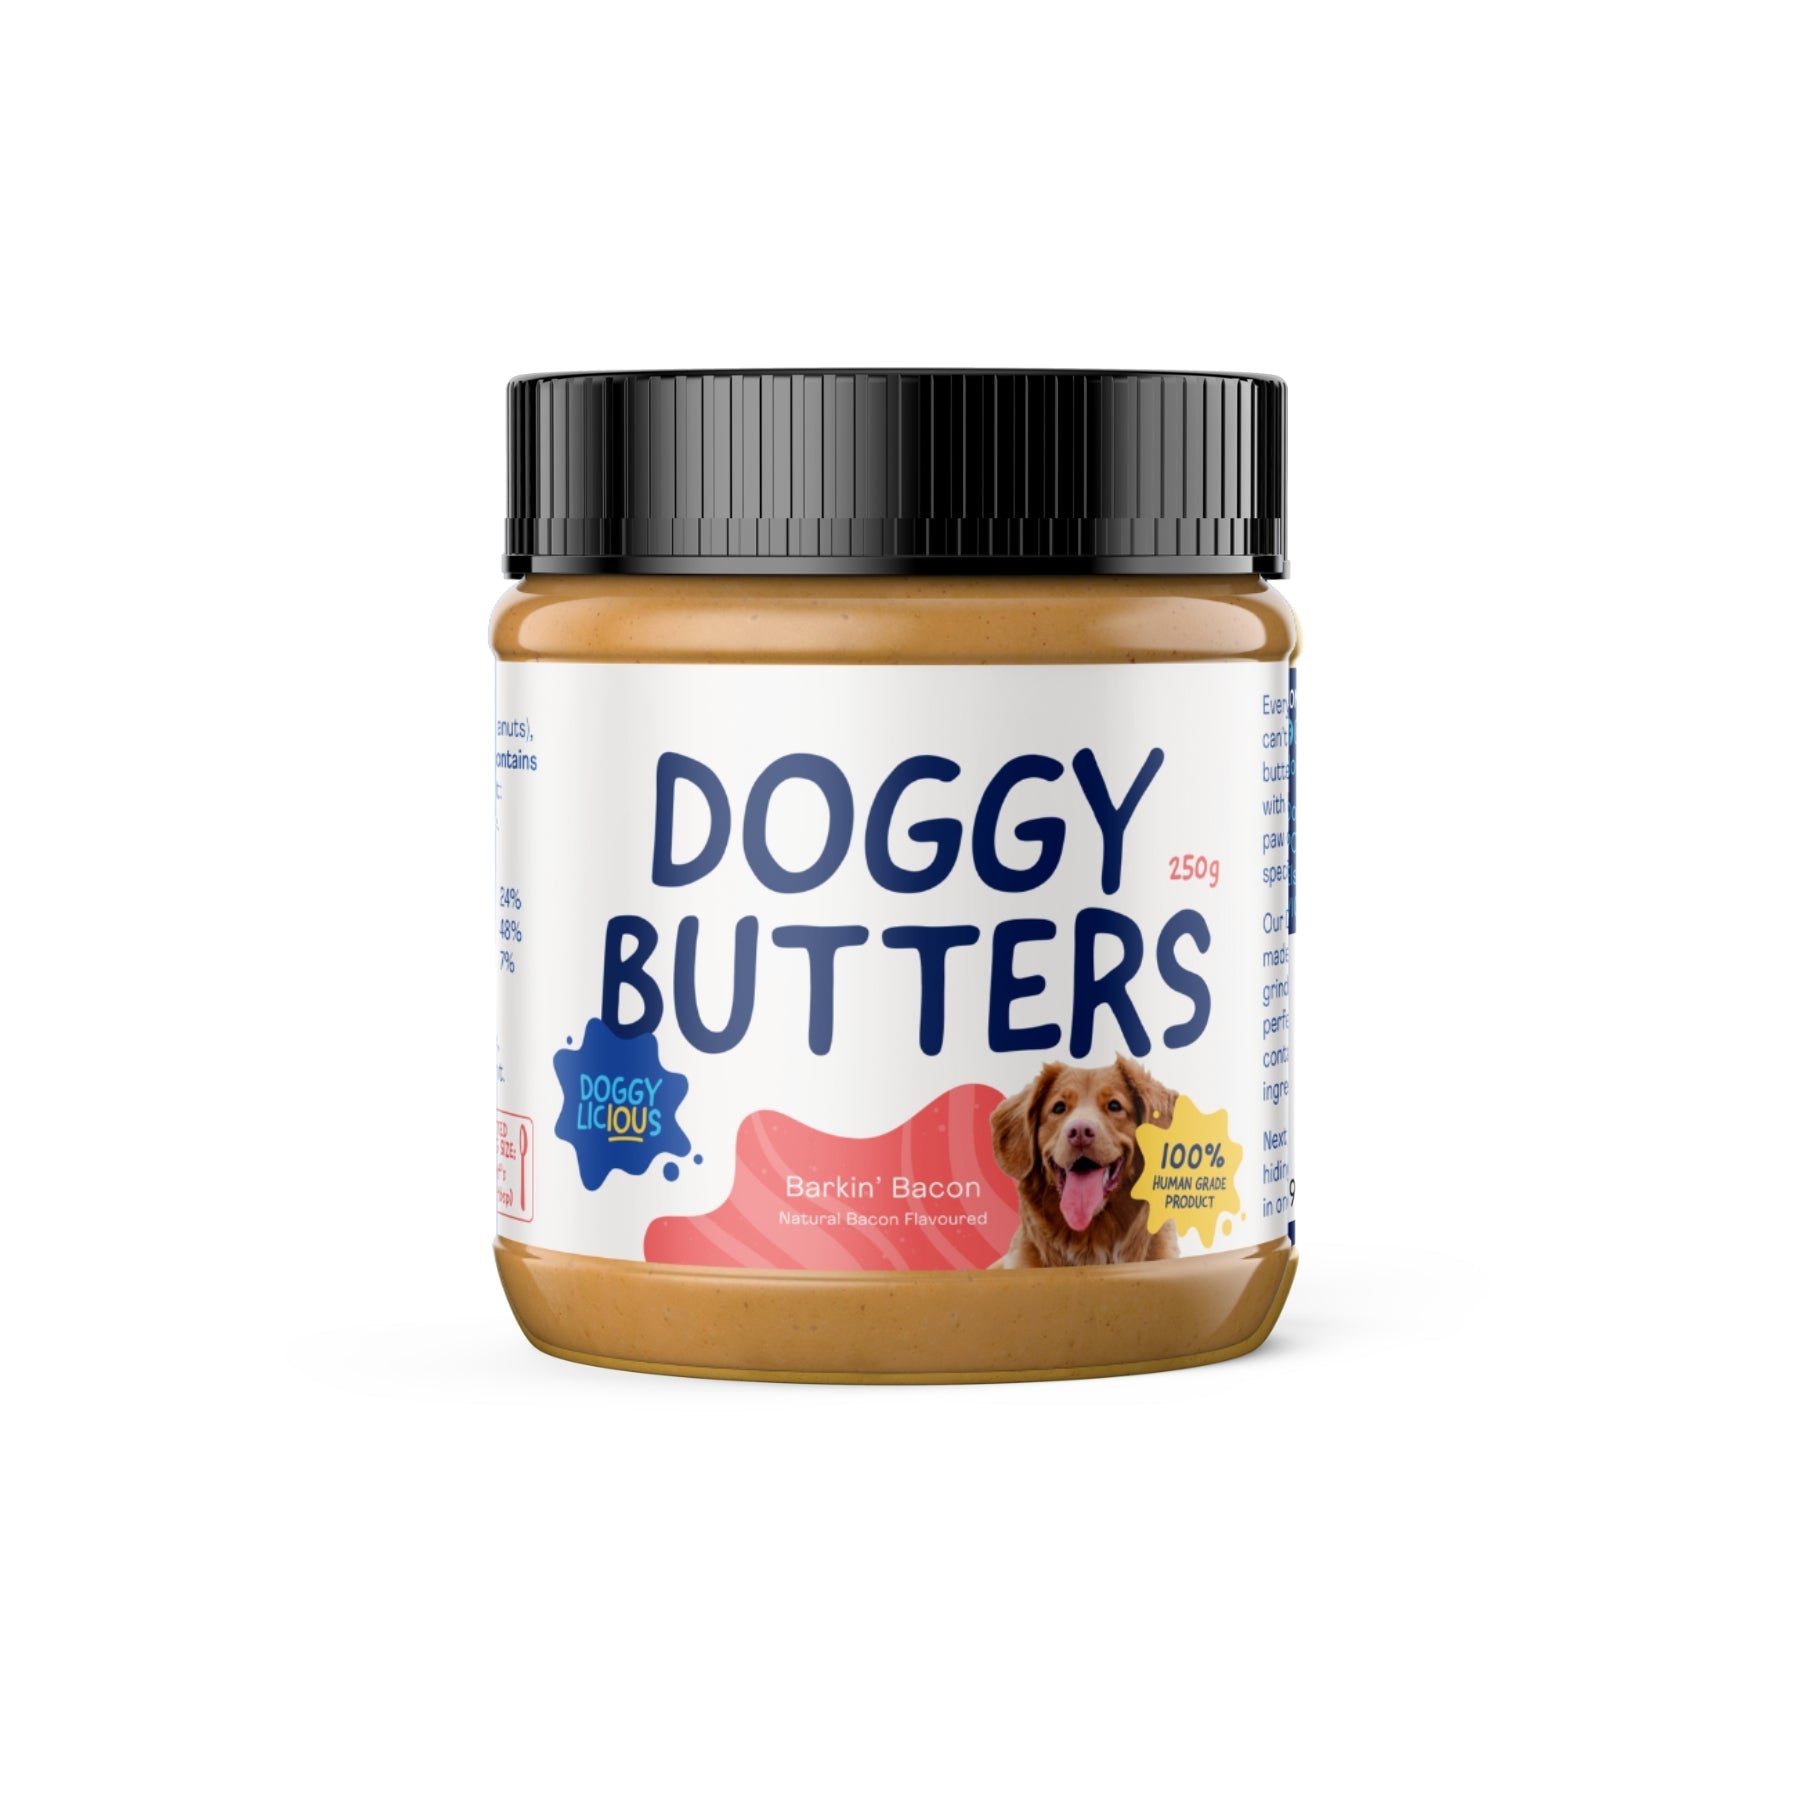 Poochie Butter Dog Lick Mat